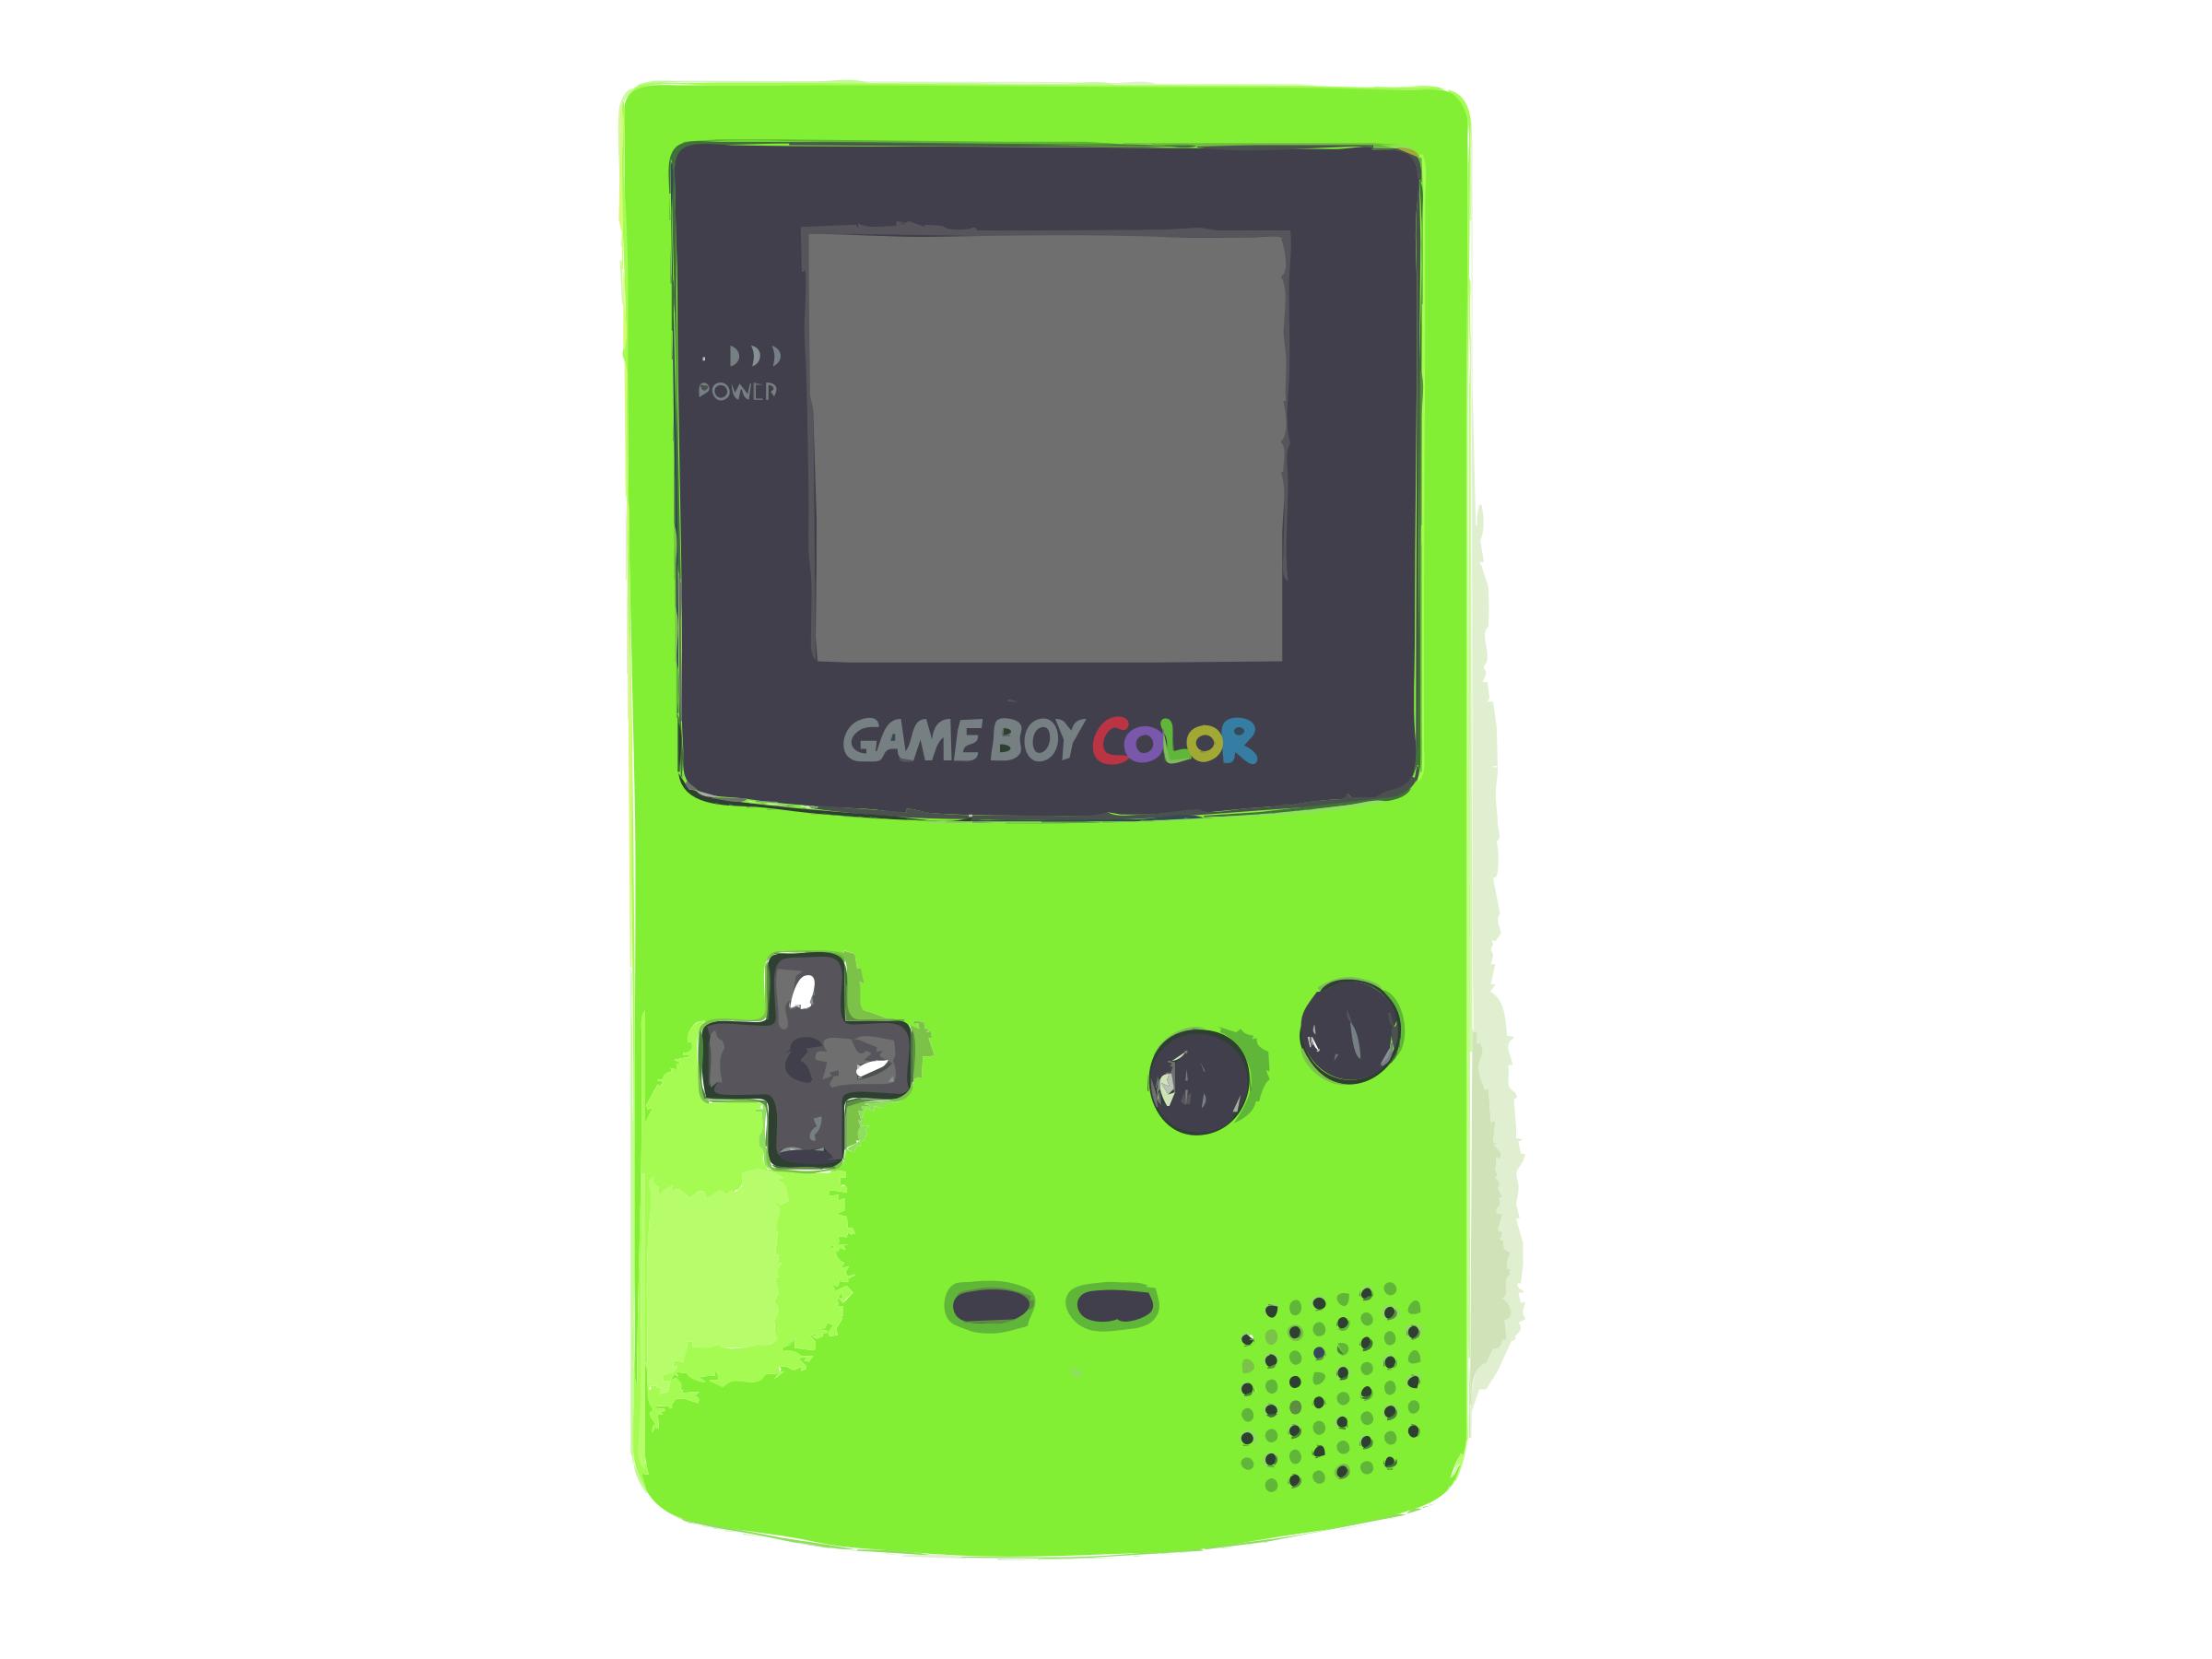 Green Nintendo Game Boy Color icons